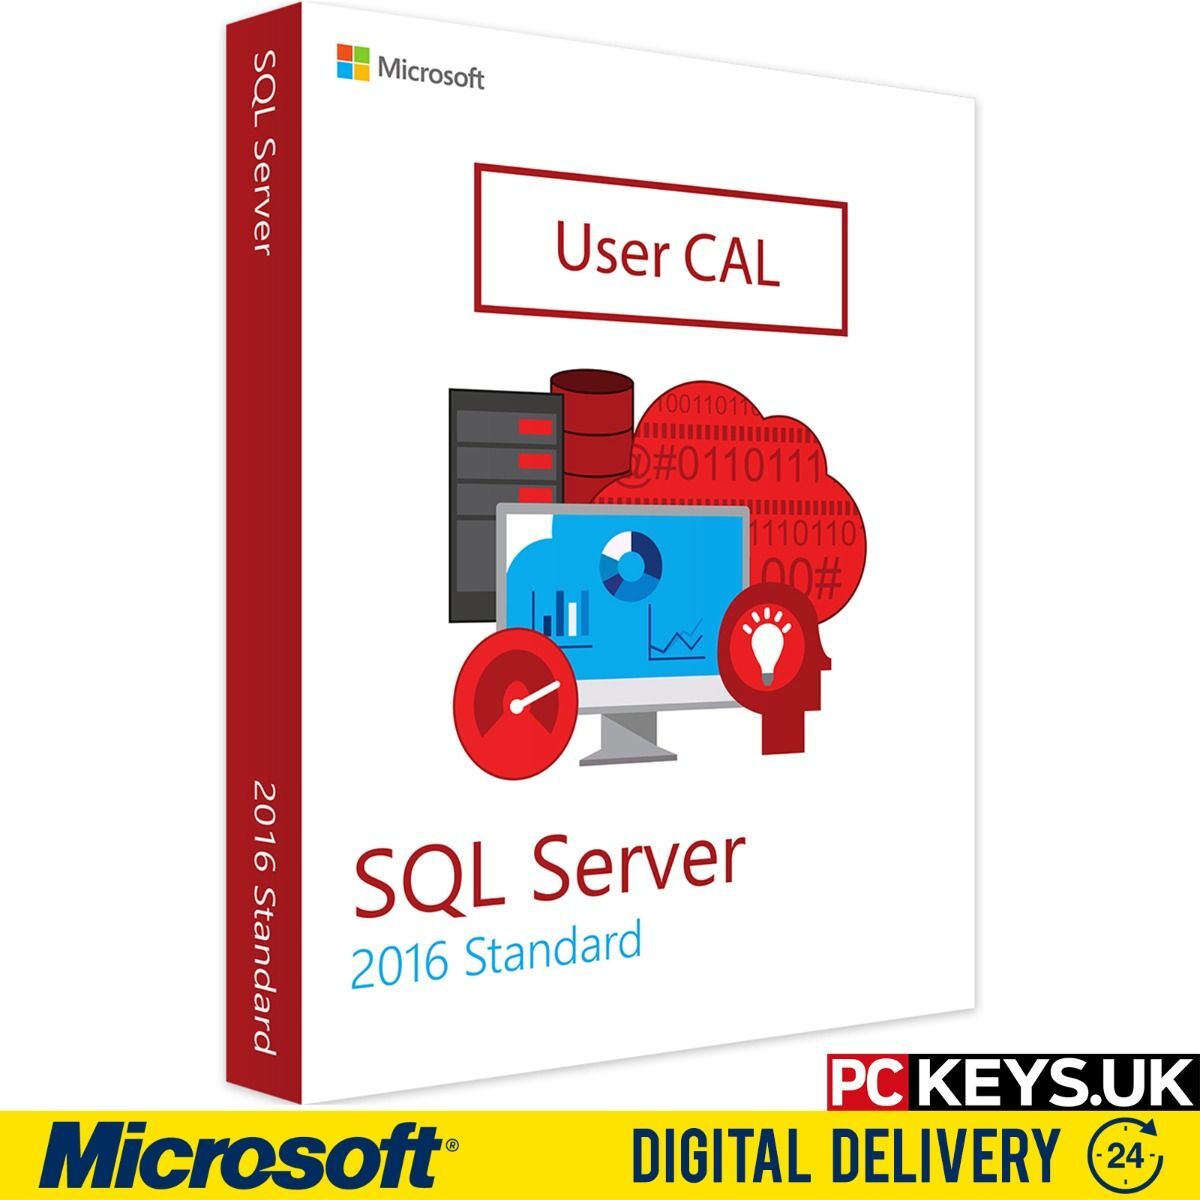 Microsoft SQL Server 2016 Standard User Cal